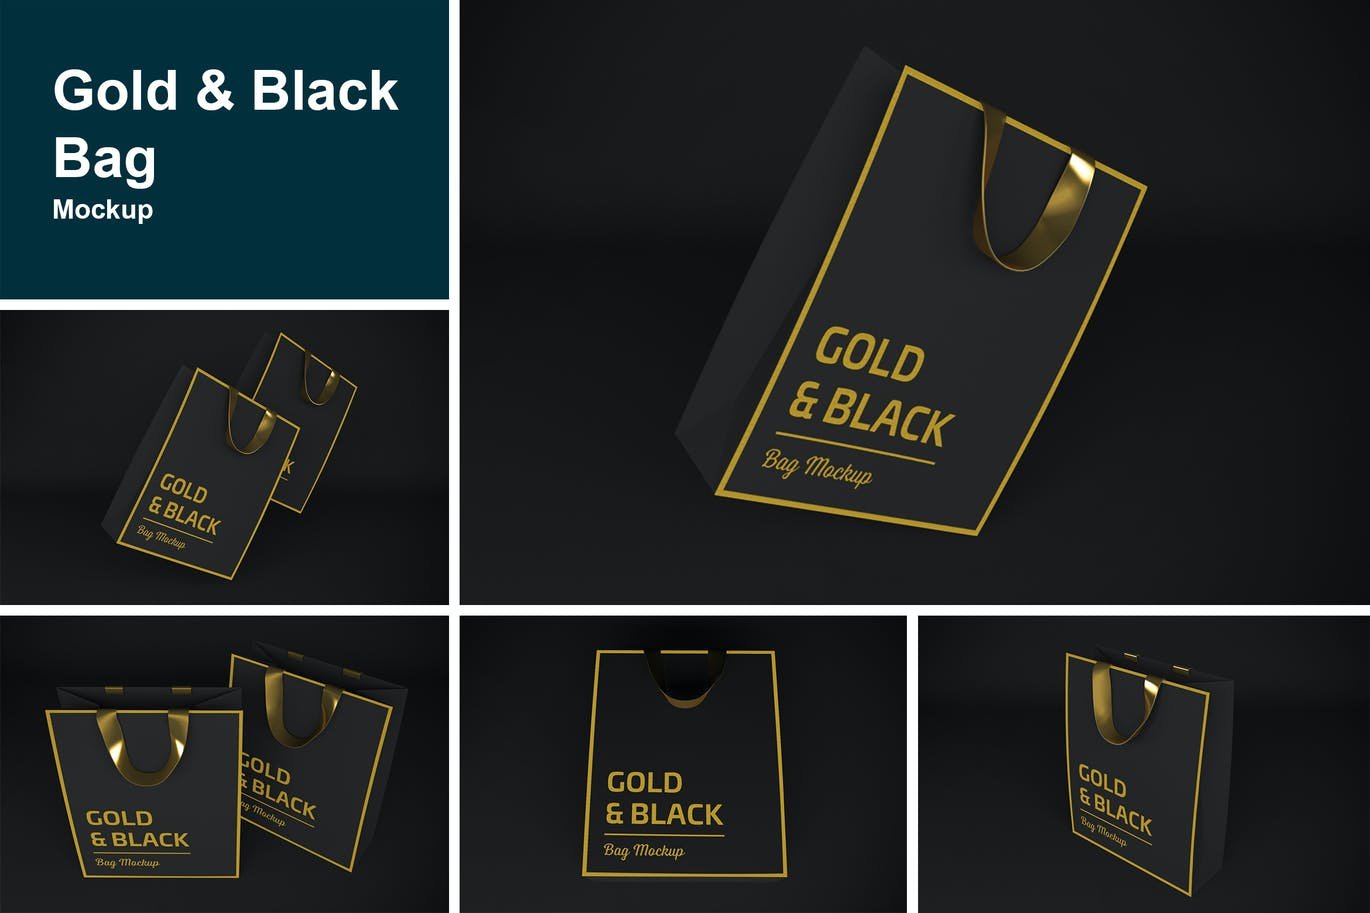 Gold & Black Bag Mockup